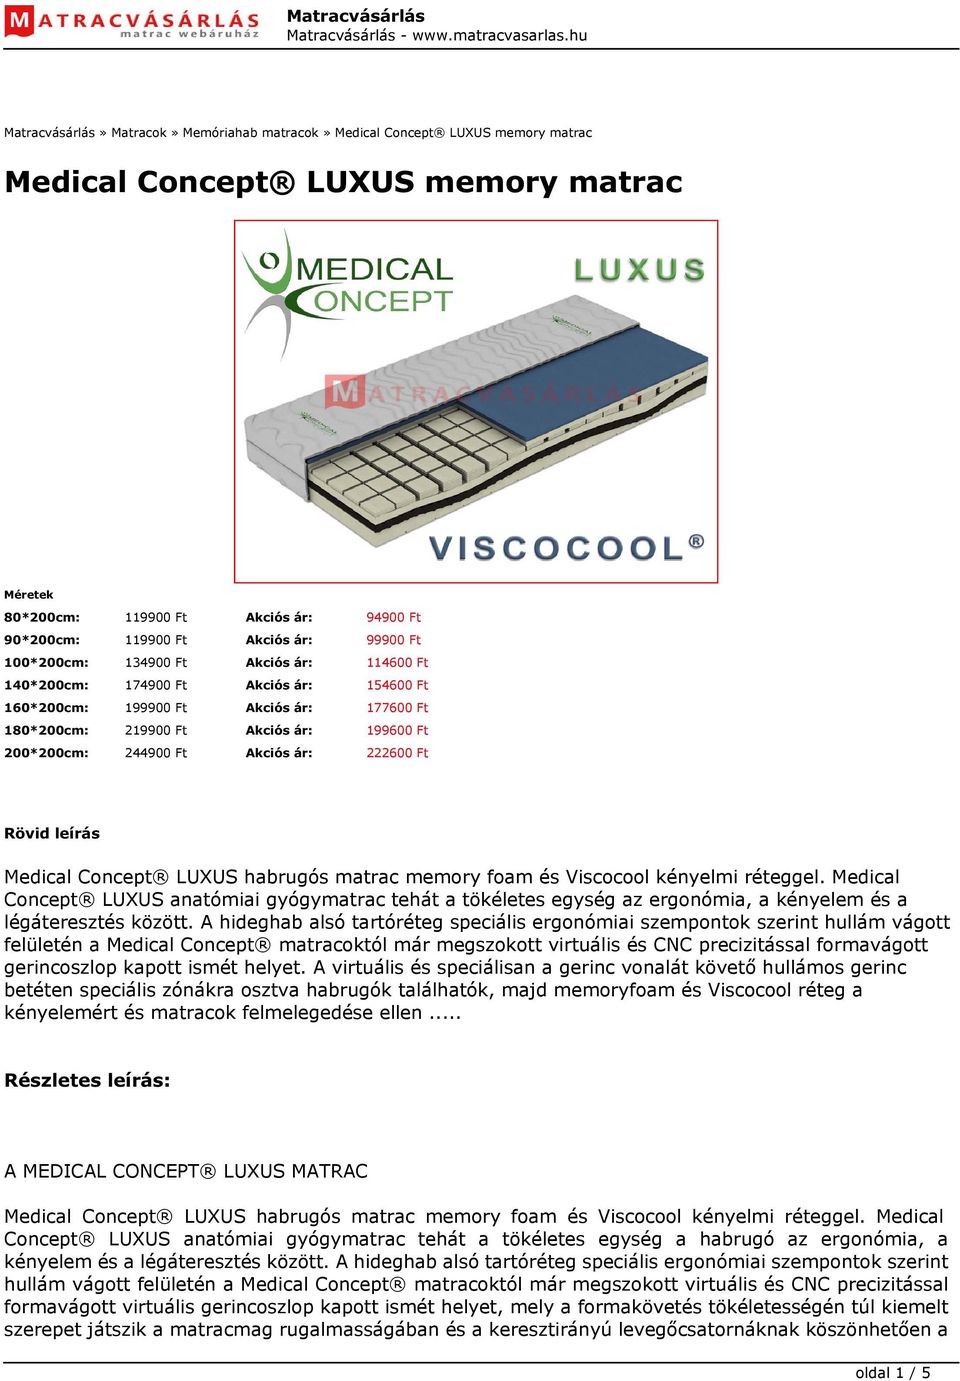 Akciós ár: 222600 Ft Rövid leírás Medical Concept LUXUS habrugós matrac memory foam és Viscocool kényelmi réteggel.